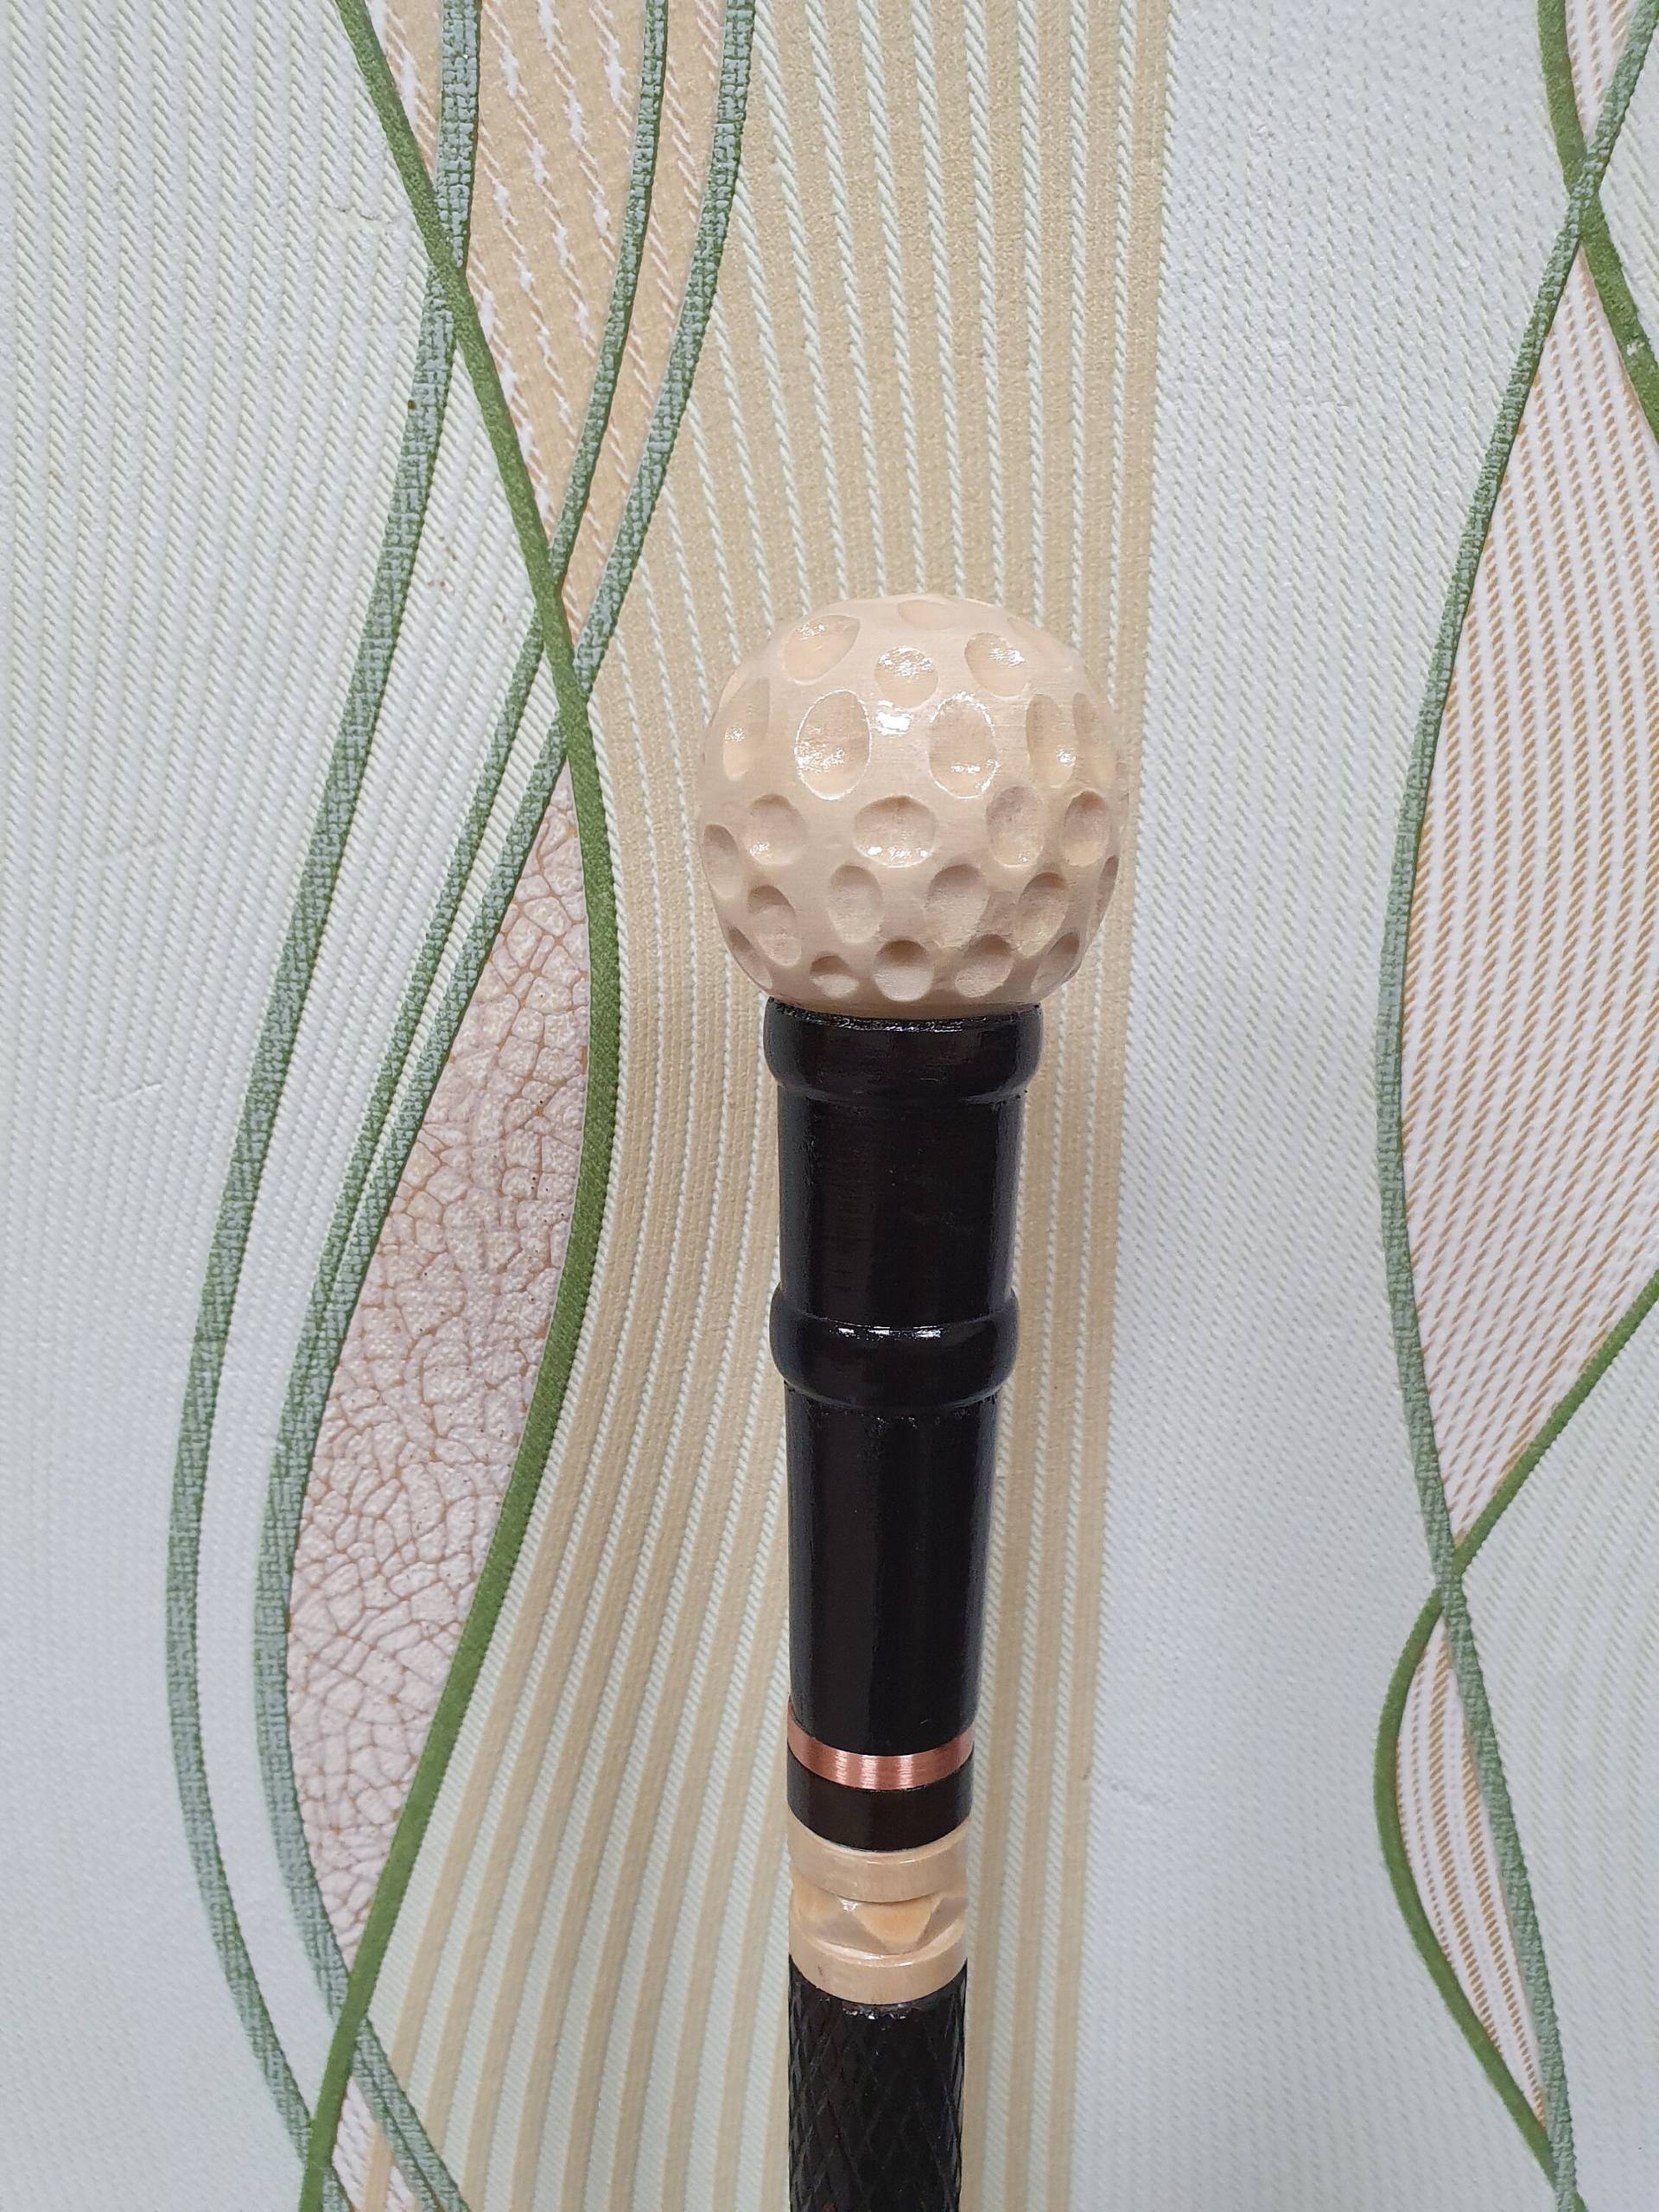 Golf Gehstock, Handgemacht, Holz Geschnitzt Gehstock von wdcarver